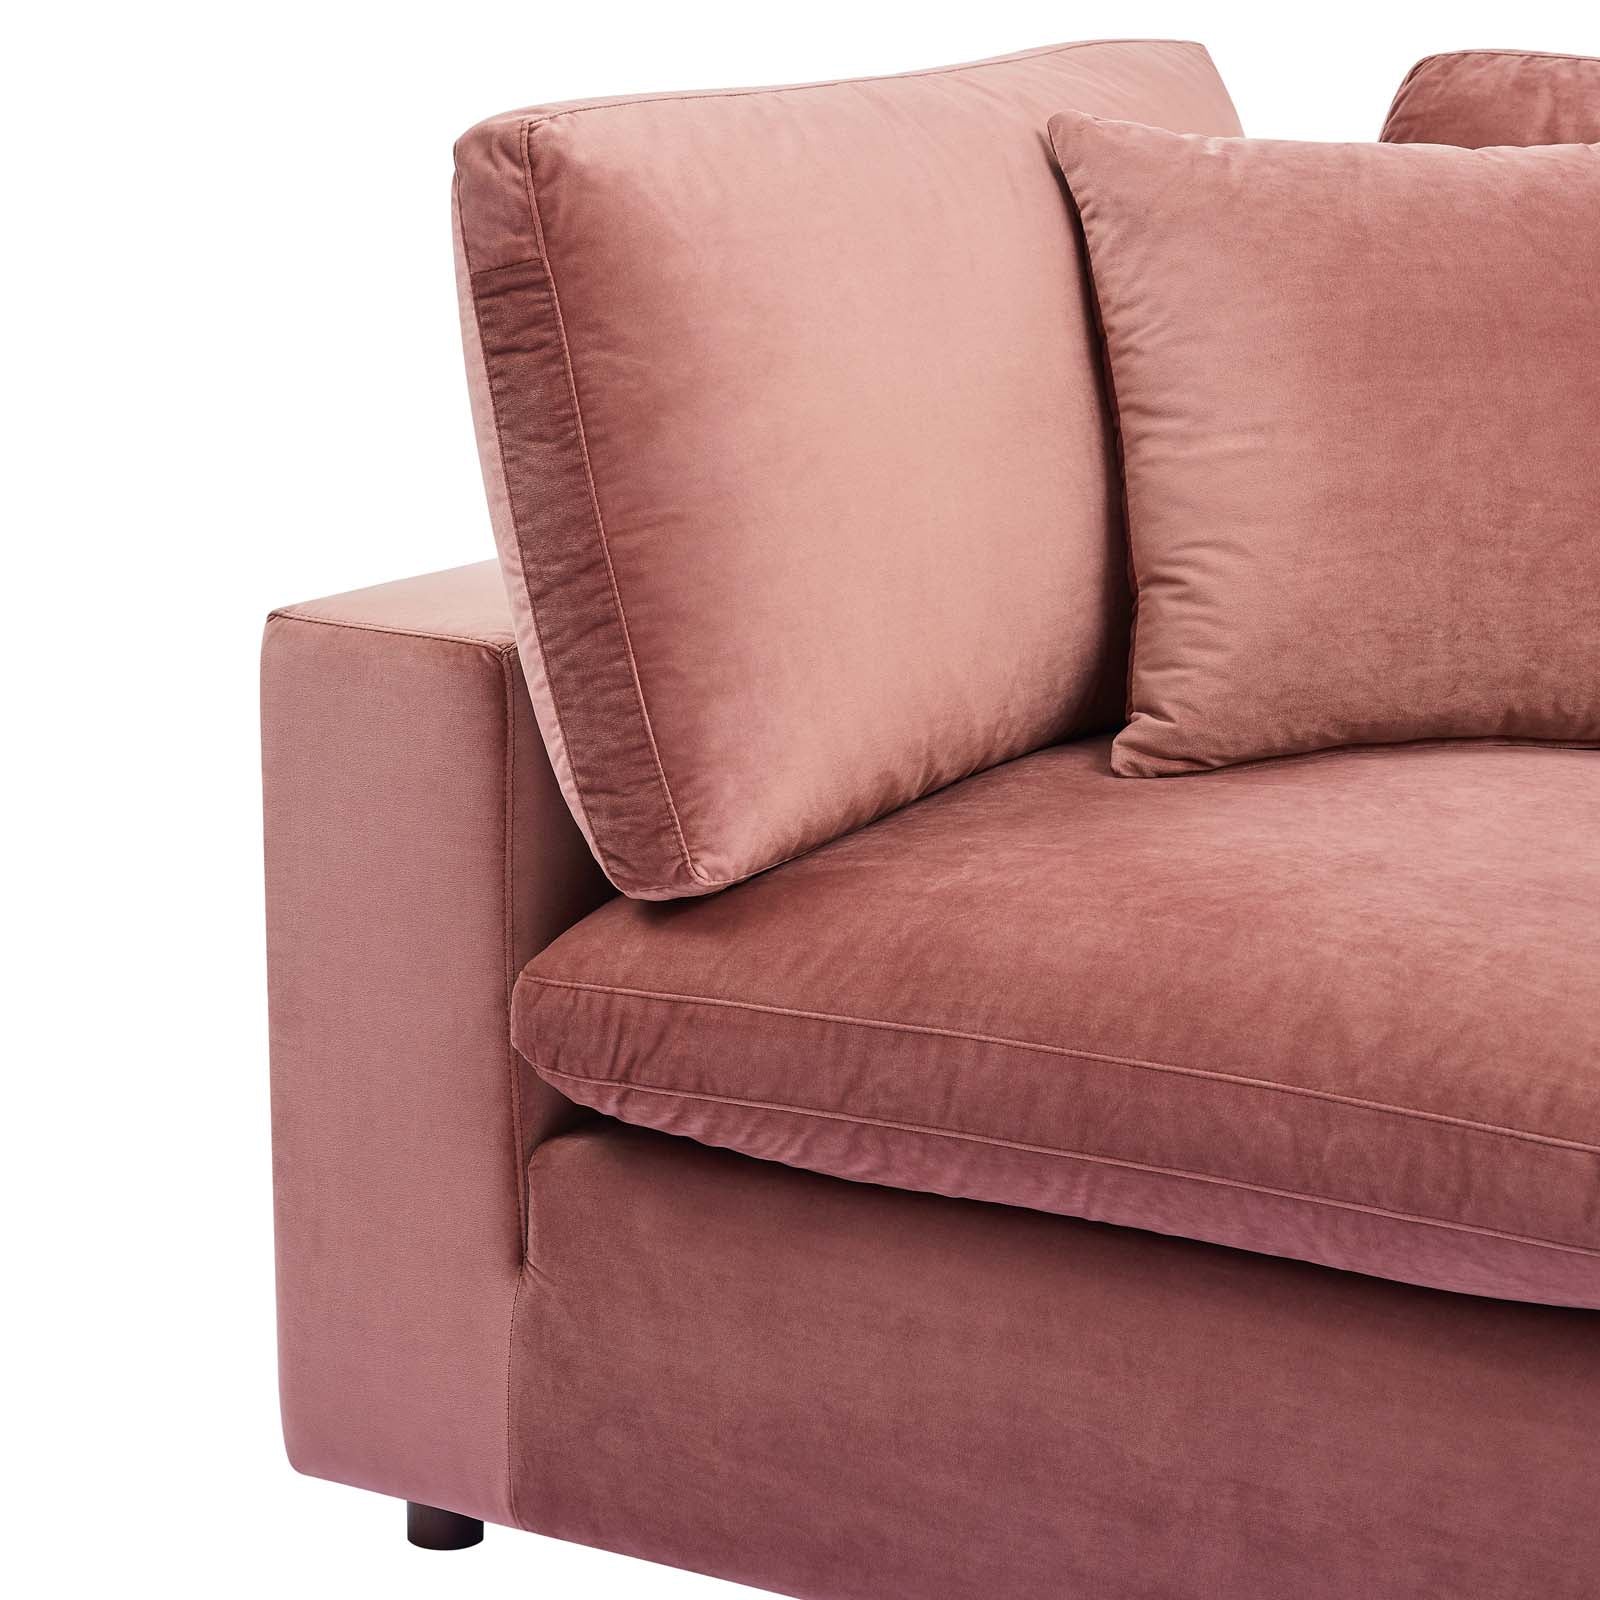 Commix Down Filled Overstuffed Performance Velvet Corner Chair - East Shore Modern Home Furnishings